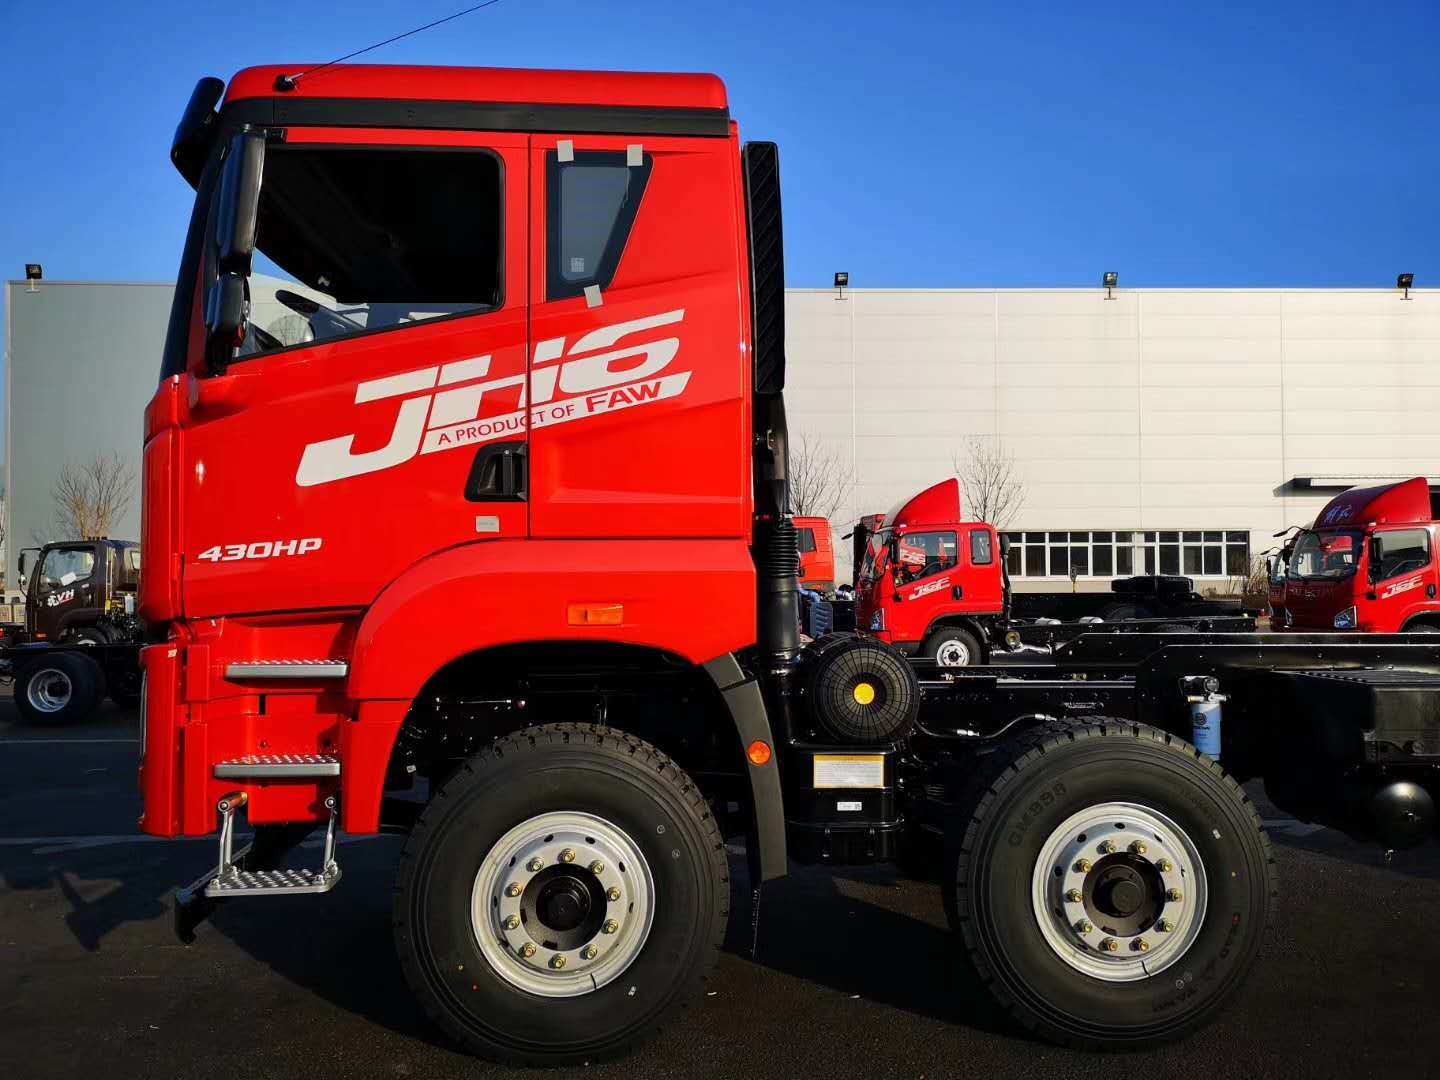 Επικεφαλής 10 ρόδες φορτηγών ρυμουλκών FAW JIEFANG JH6 6x4 για τη μεταφορά/το εμπορικό ρυμουλκό φορτηγών